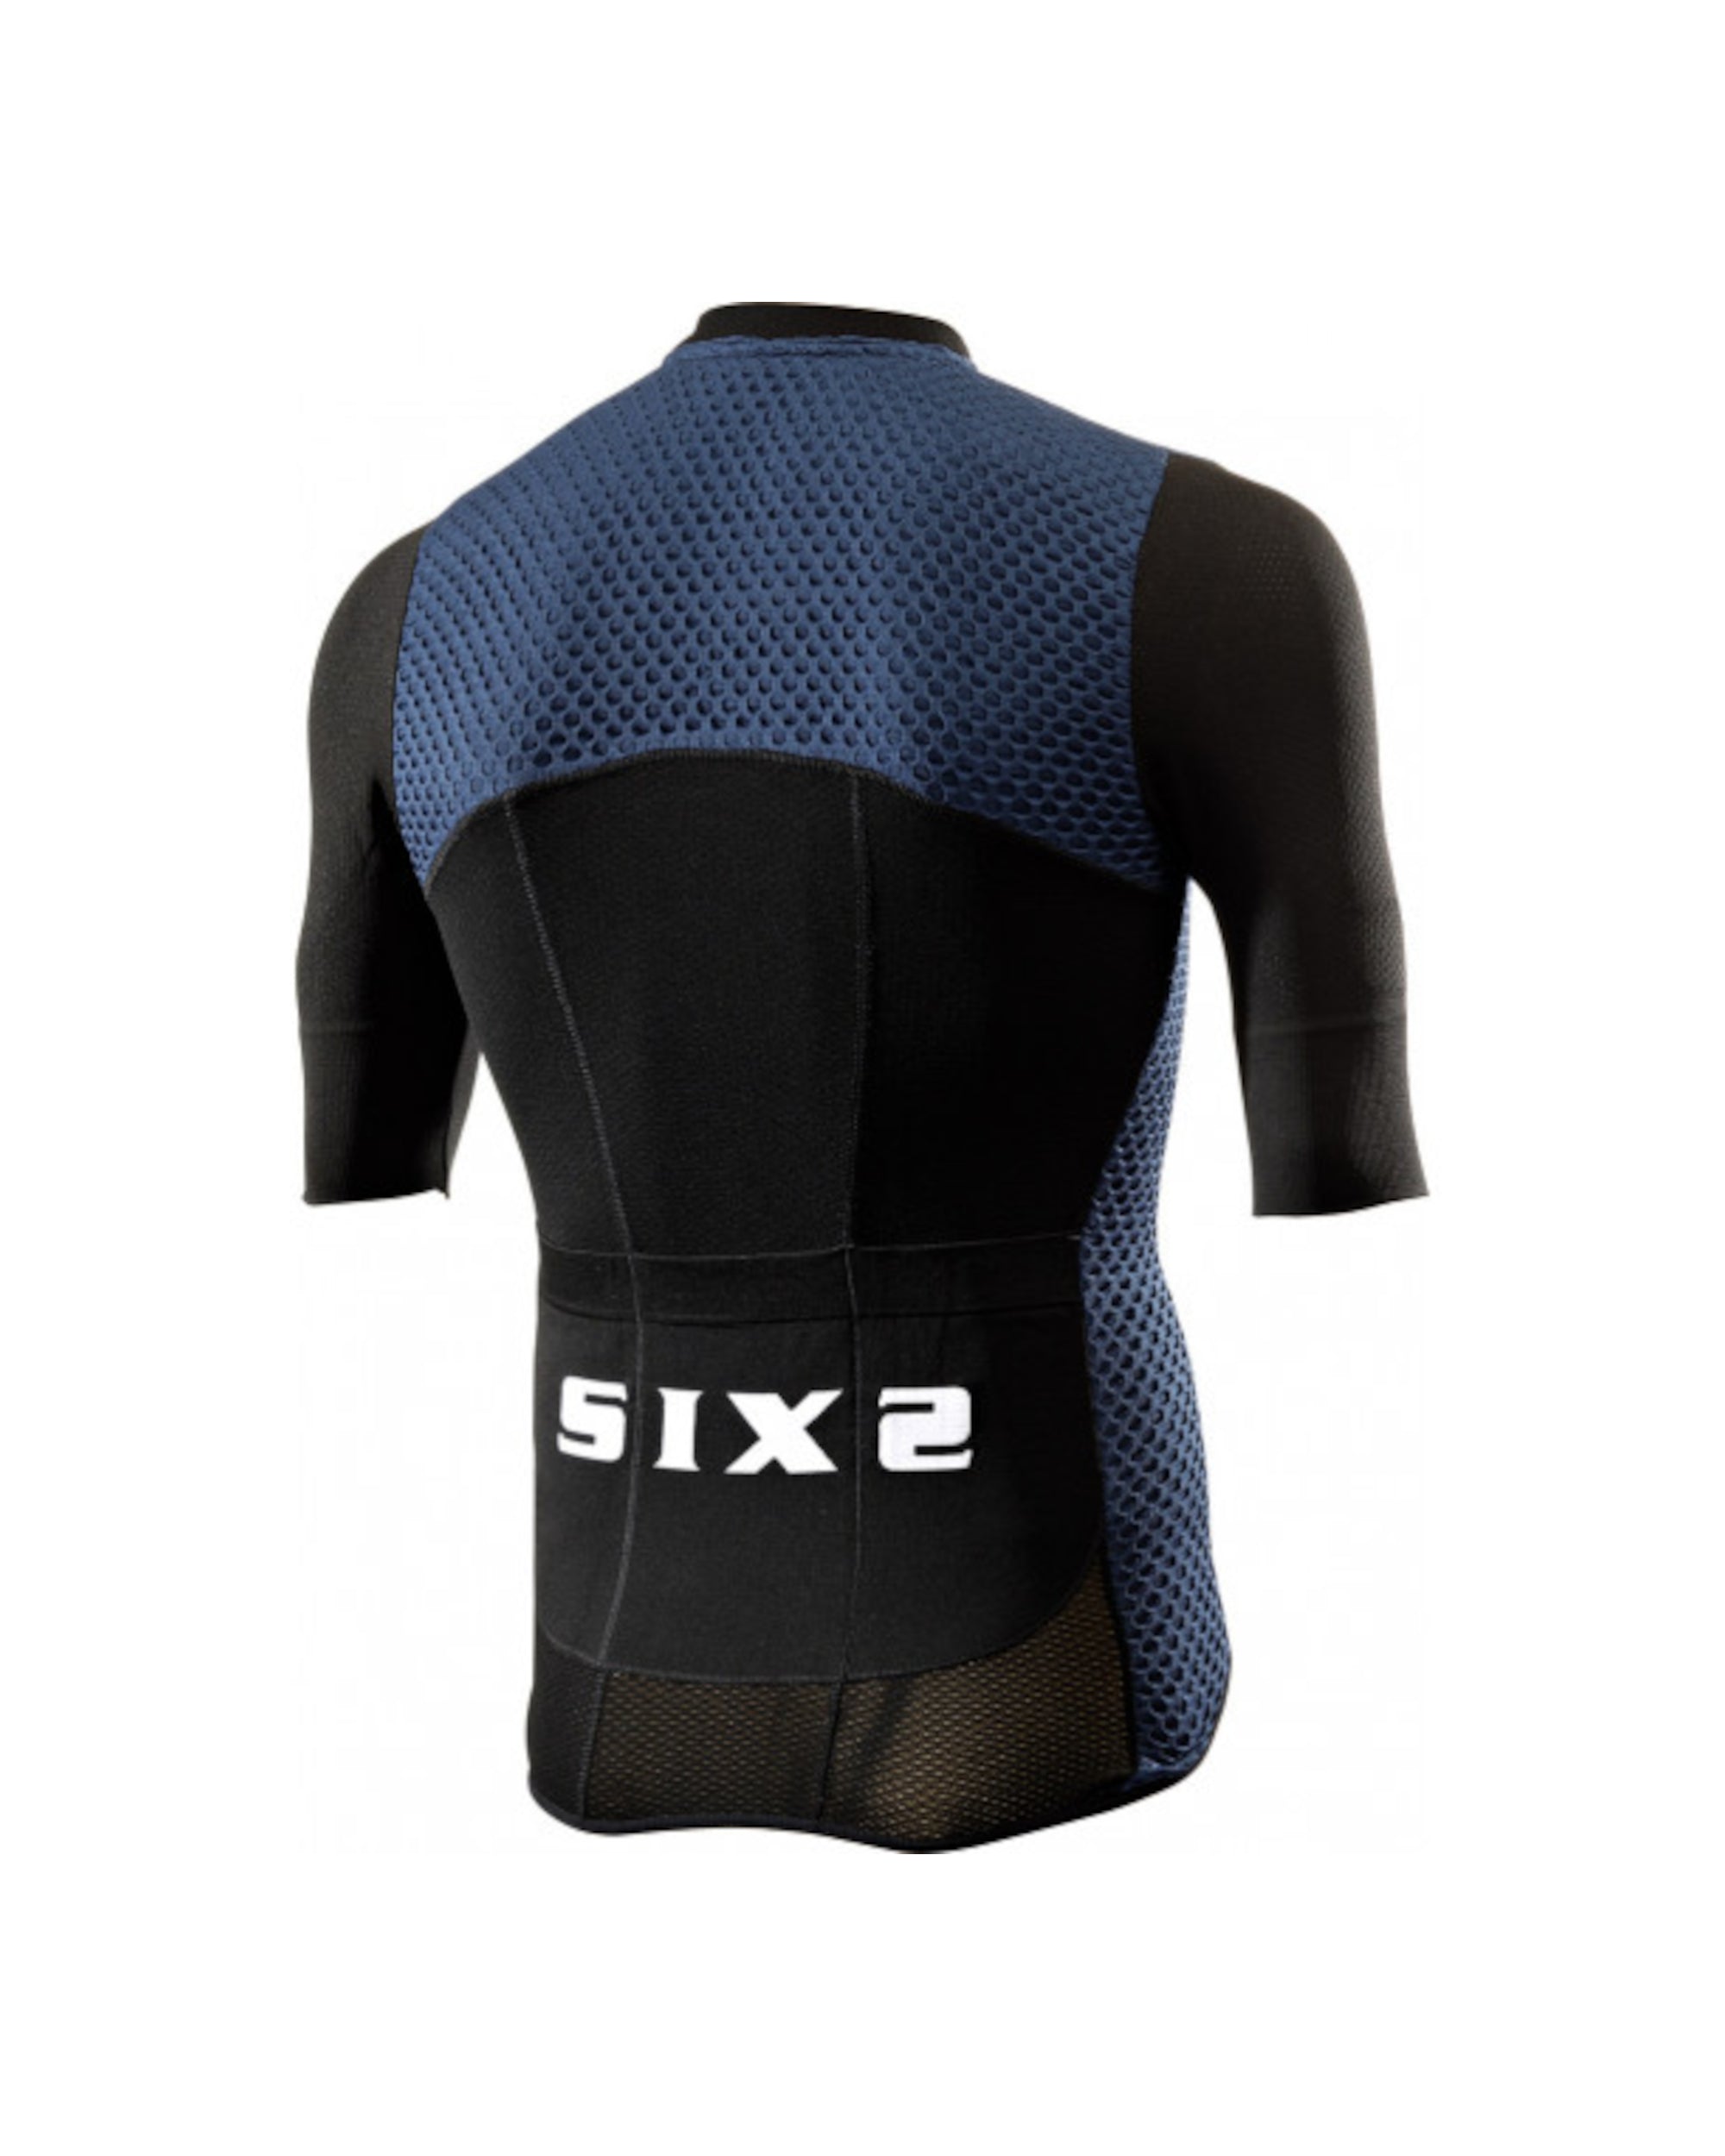 Marškinėliai SIXS Hive Navy